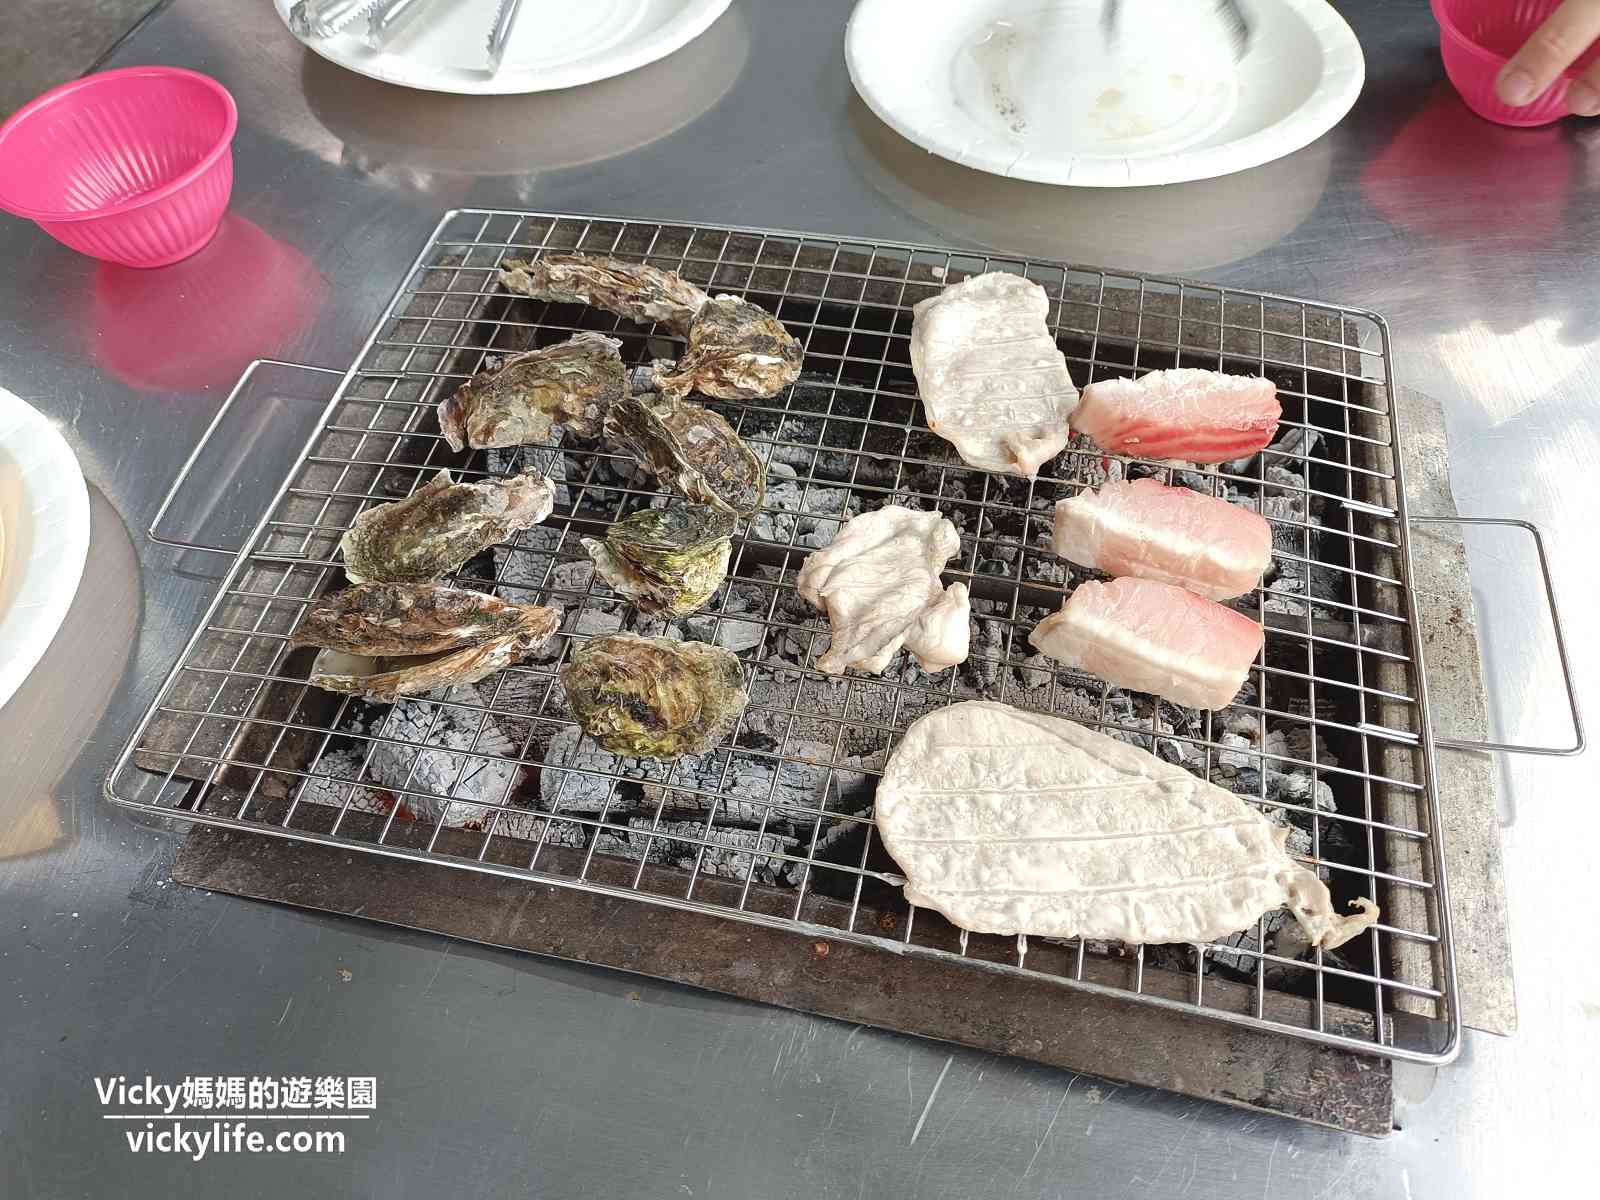 小琉球美食︱極香燒烤吃到飽：398元狂嗑生蠔、泰國蝦、牛五花